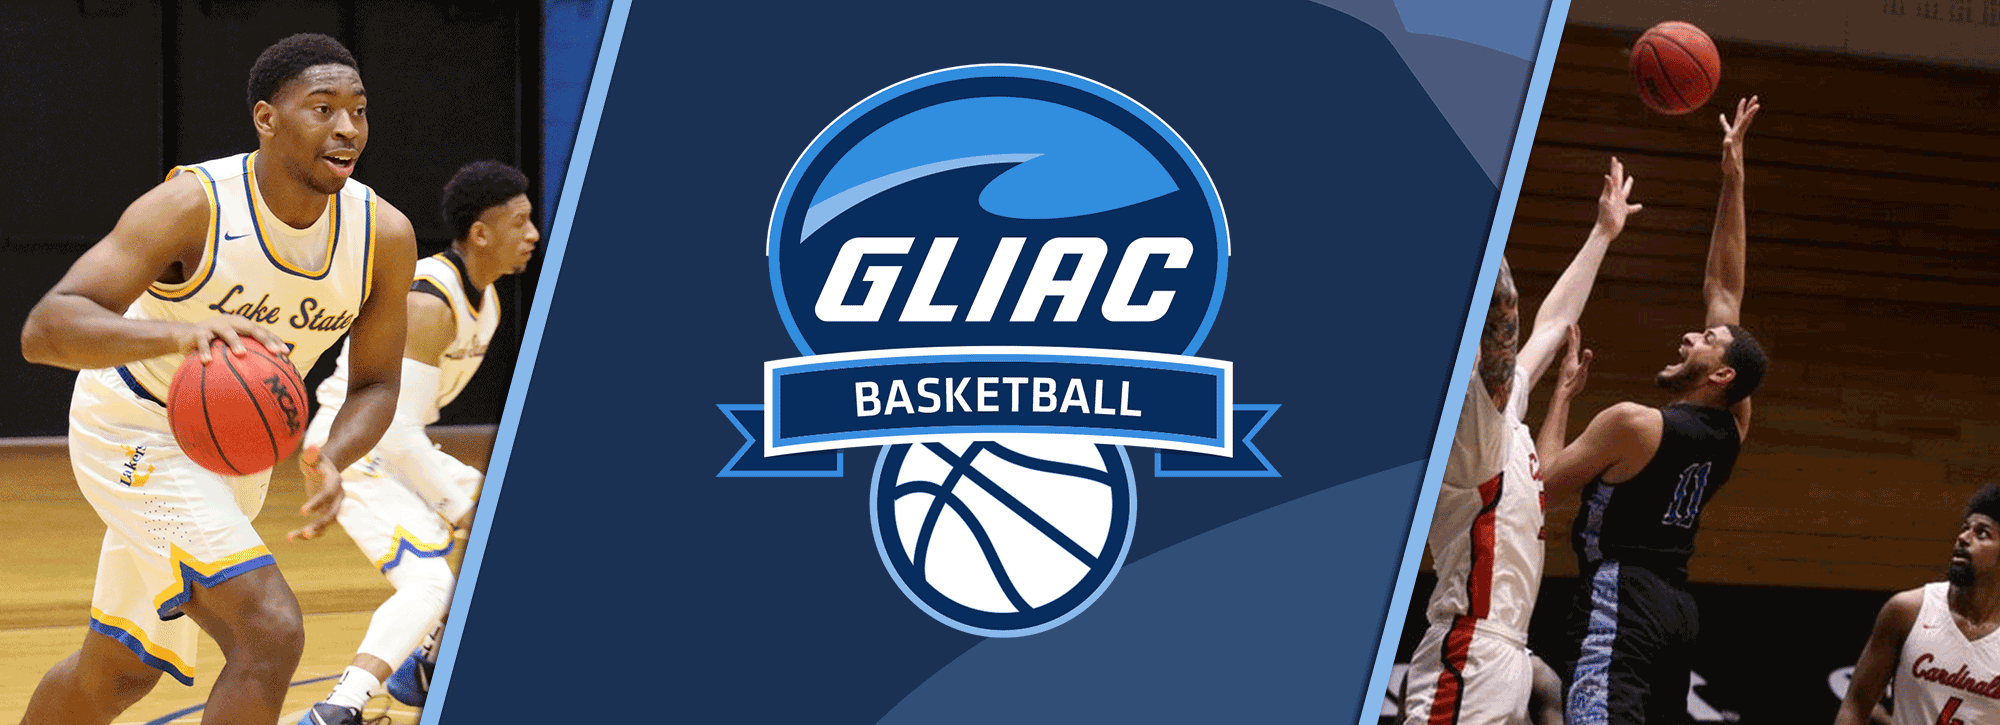 LSSU's Bassett, GVSU's Negron Claim GLIAC Men's Basketball Weekly Honors